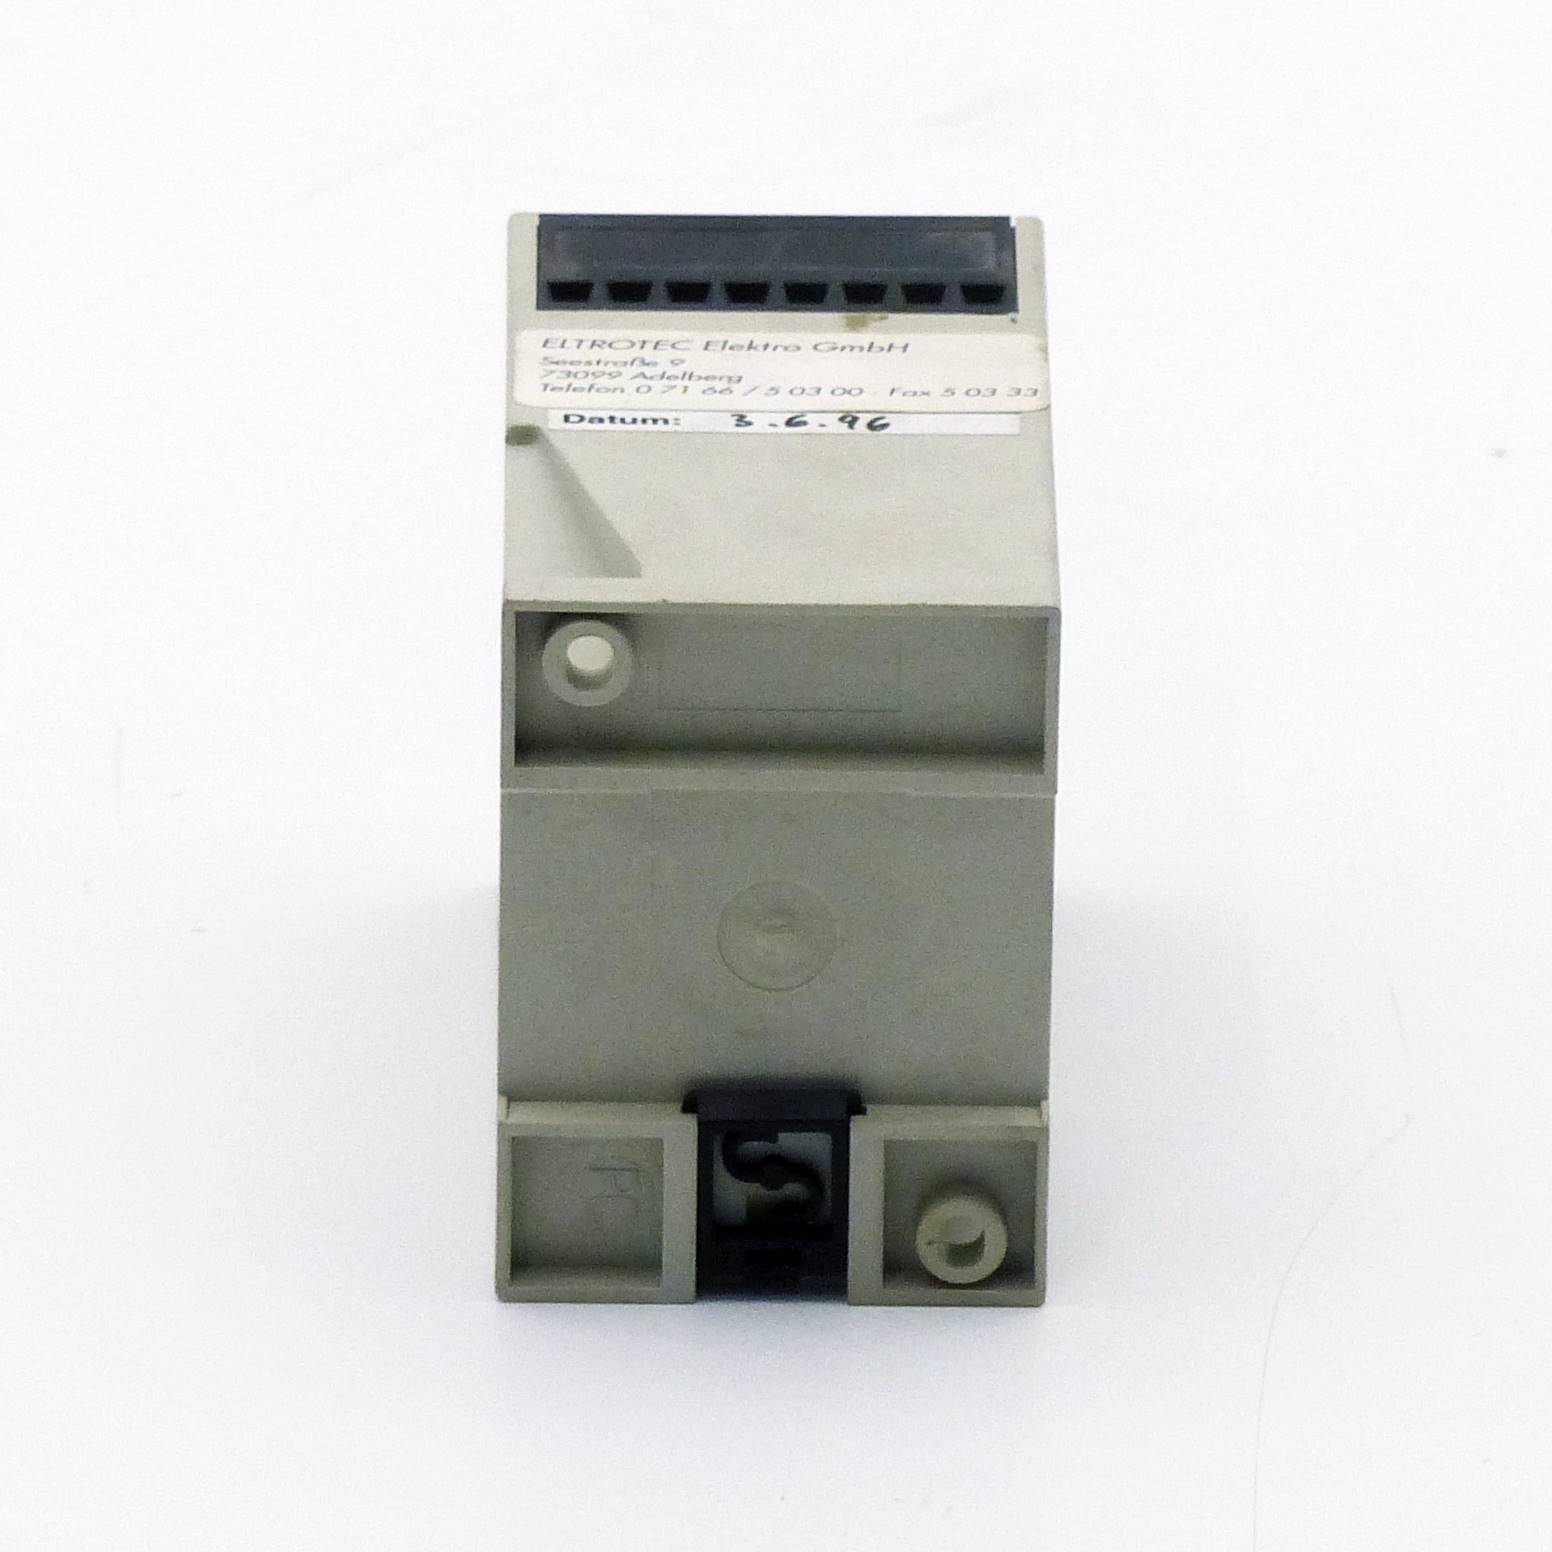 Window relay FFR-K-10 